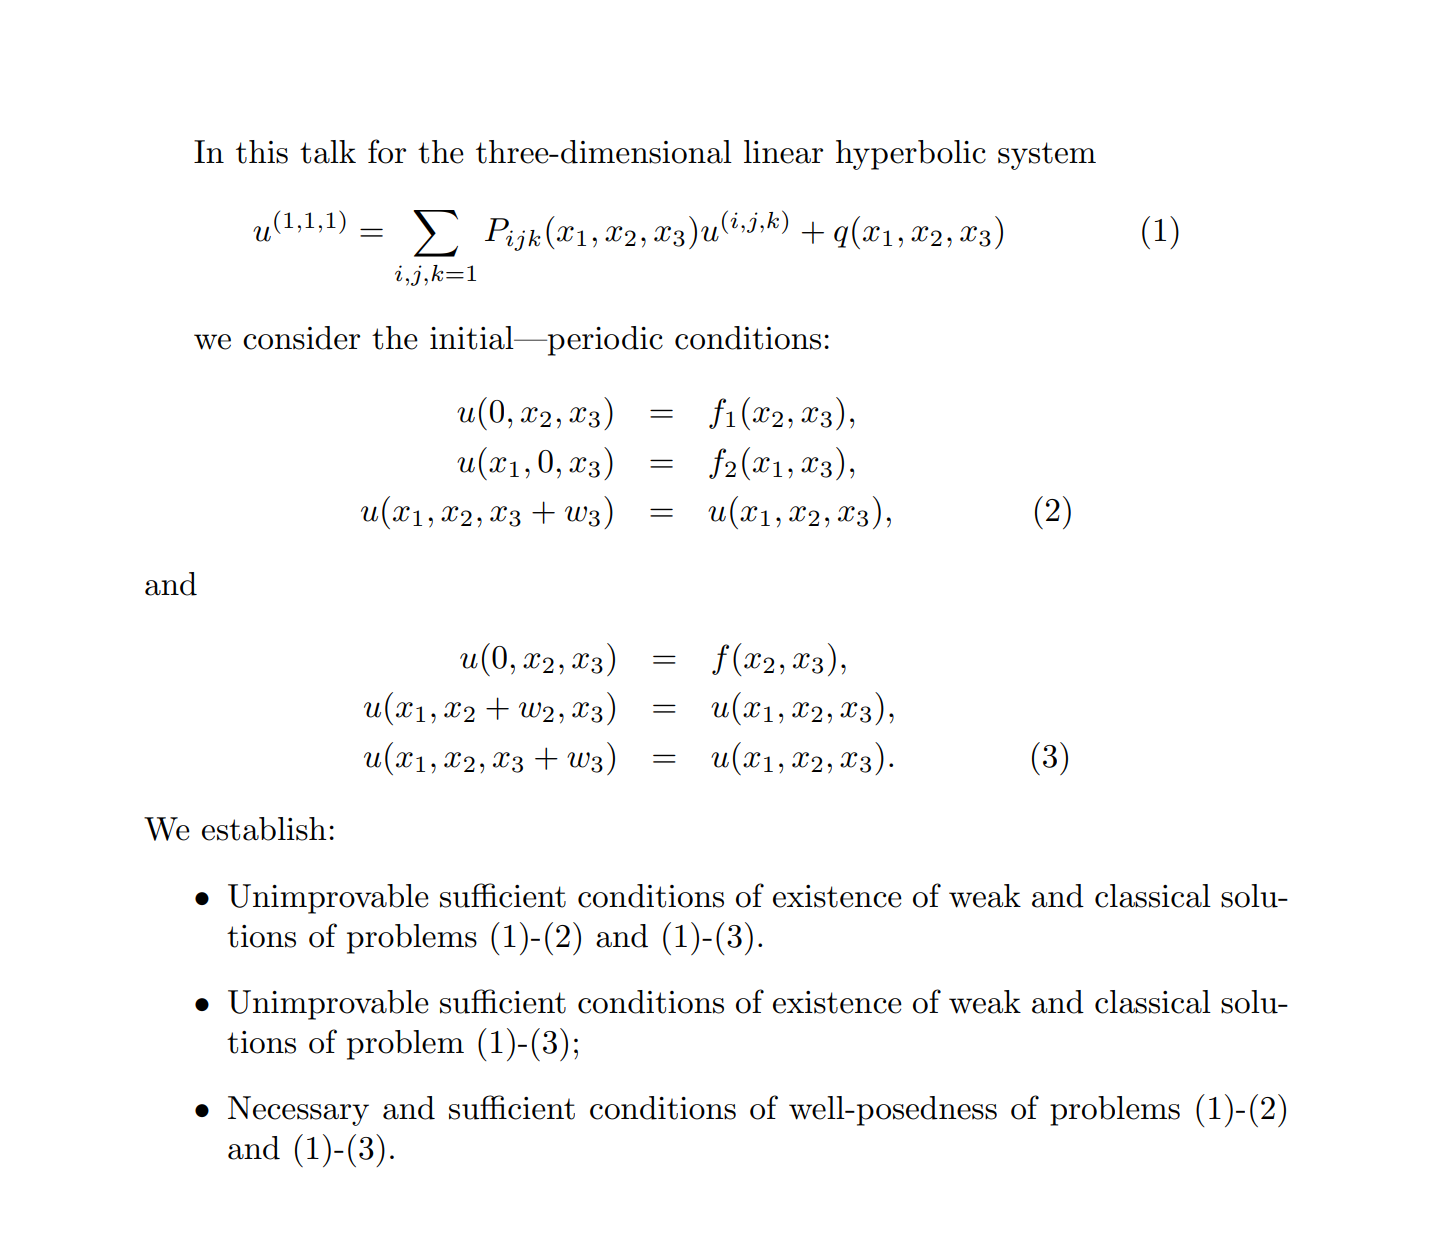 In this talk for the three-dimensional linear hyperbolic system        u^(1,1,1) = \sum_{i,j,k  \leq 1} P_{ijk} (x_1,x_2,x_3) u^(i,j,k)   +  q(x_1,x_2,x_3),       (1)  We consider the initial—periodic conditions       u(0,x_2,x_3) = f_1(x_2,x_3),        u(x_1,0, x_3 ) =  f_2(x_1,x_3 ),     u(x_1,x_2, x_3 + w_3) = u(x_1,x_2,x_3 ),         (2)  and      u(0,x_2,x_3) = f(x_2,x_3),        u(x_1,x_2 +w